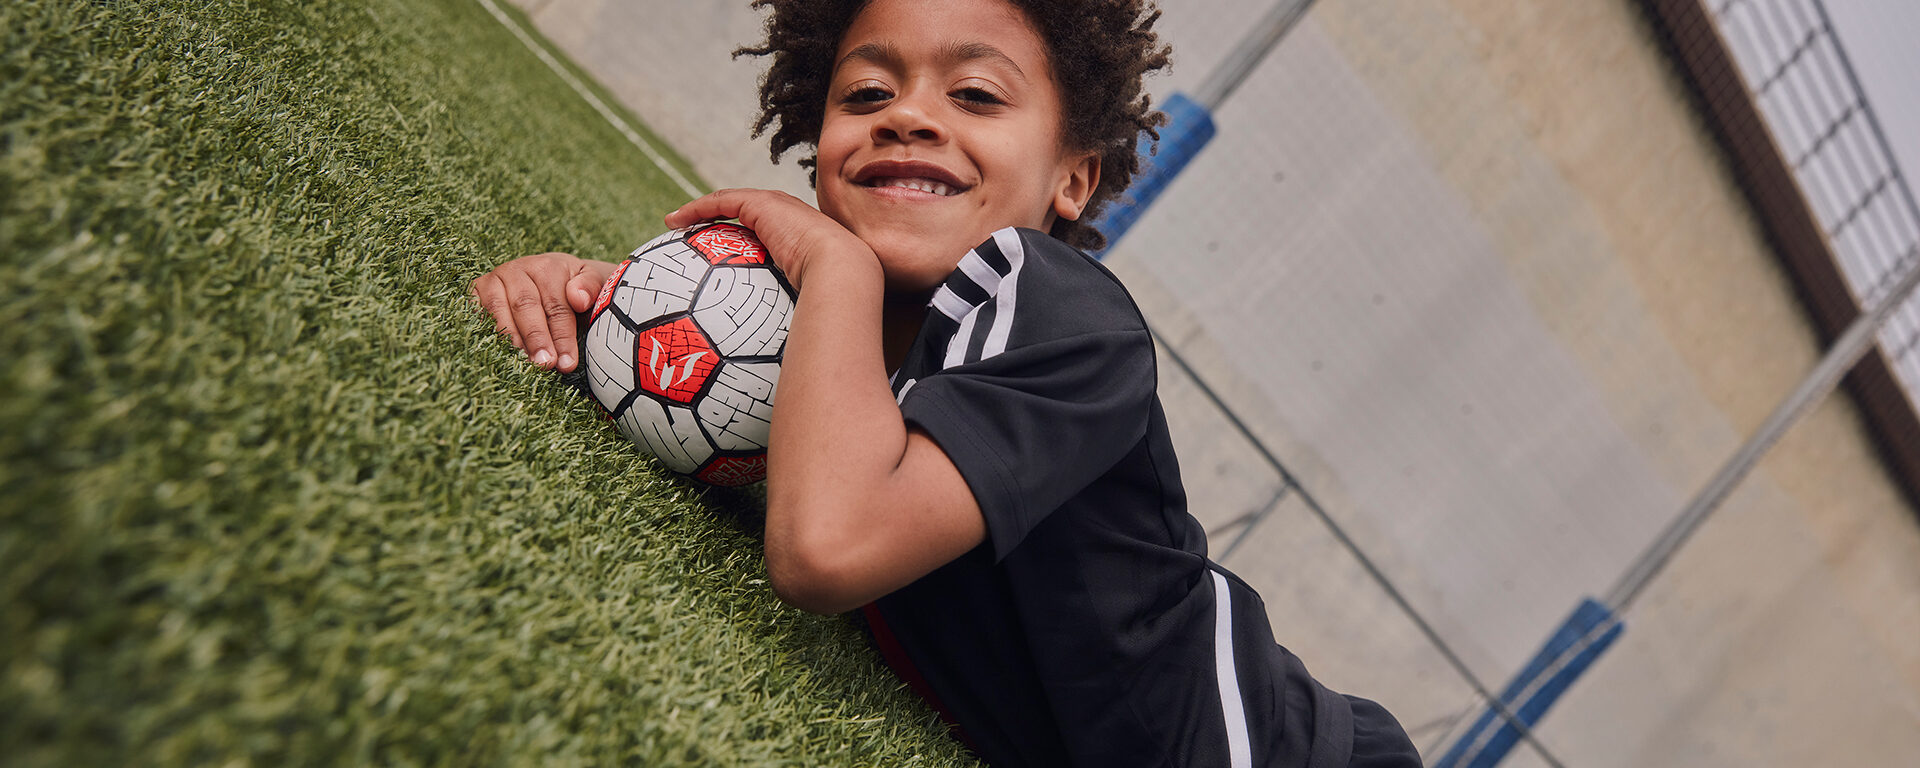 Niño acostado en la hiera con un balón de fútbol bajo su mentón